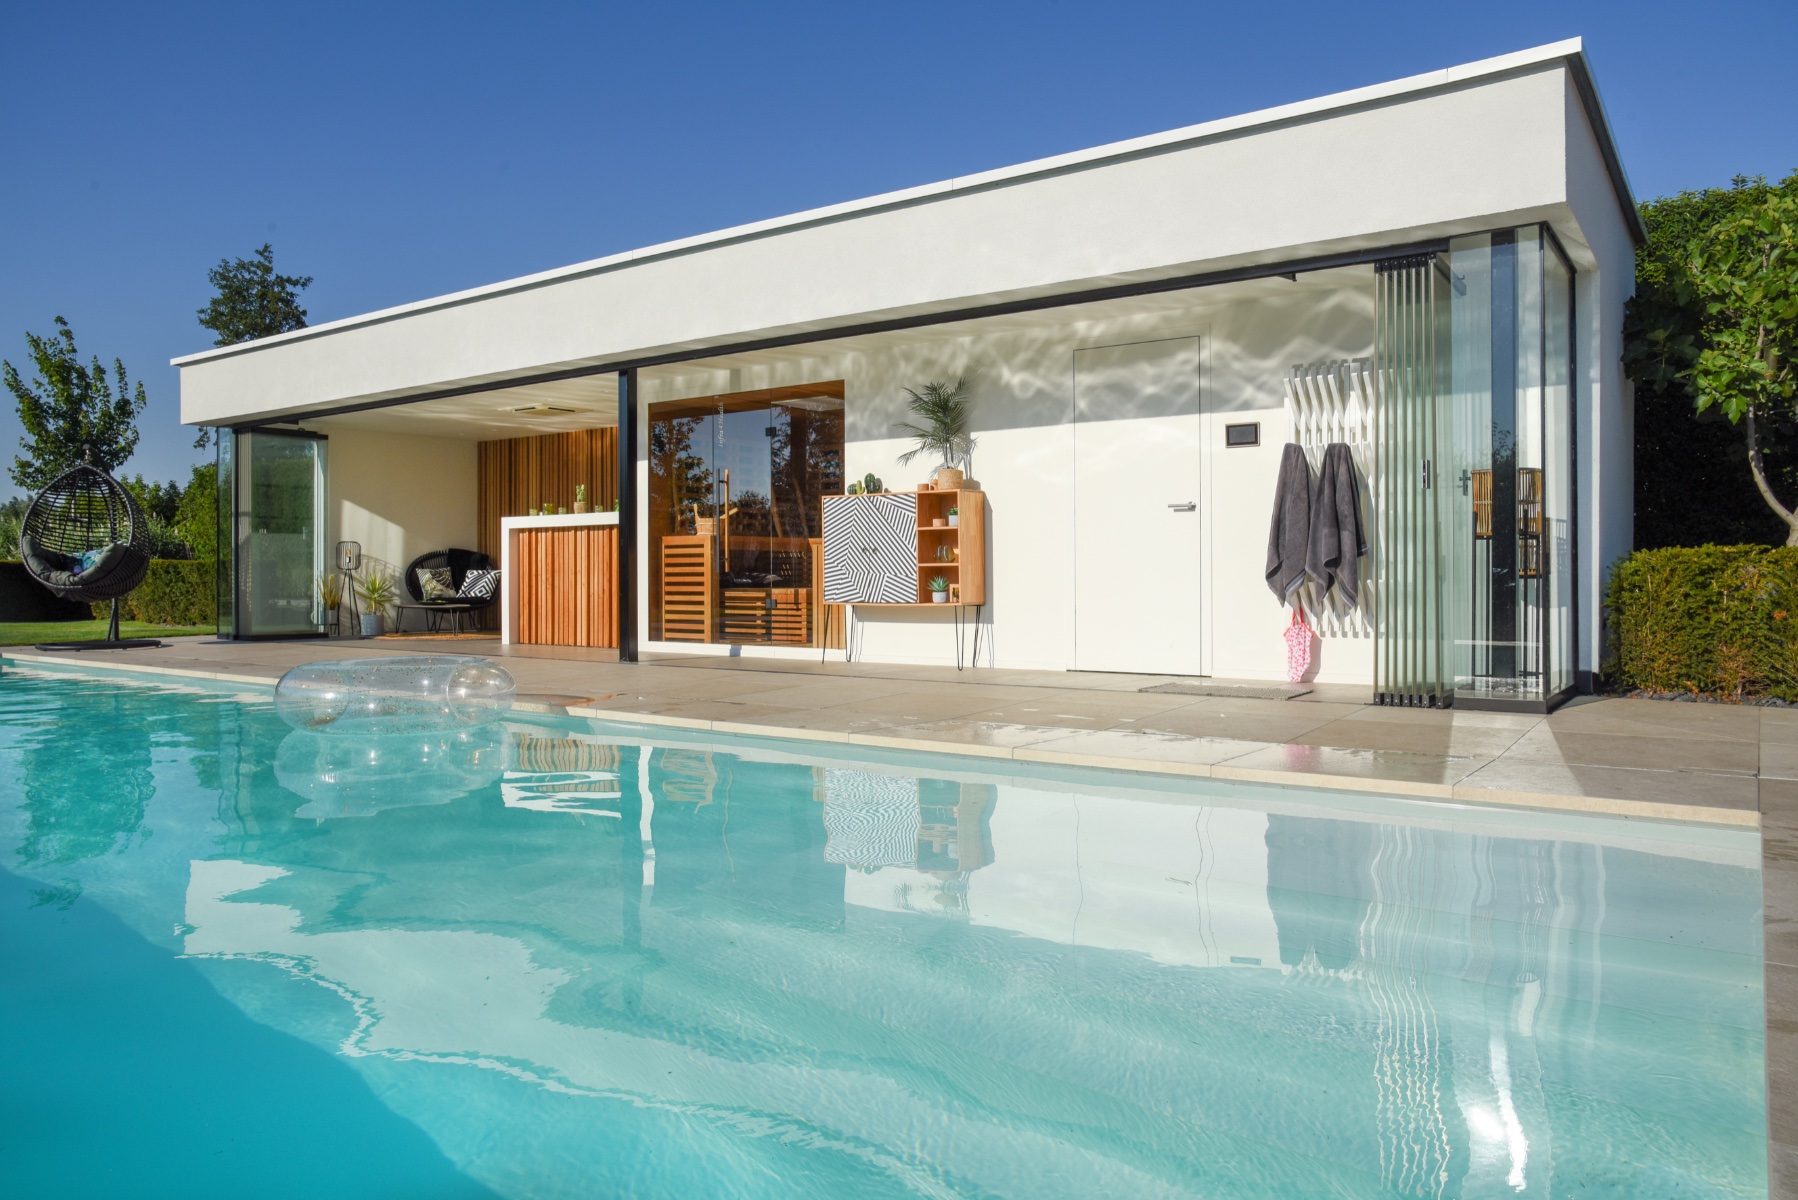 strak en modern poolhouse met een tikkeltje vintage naast het zwembad